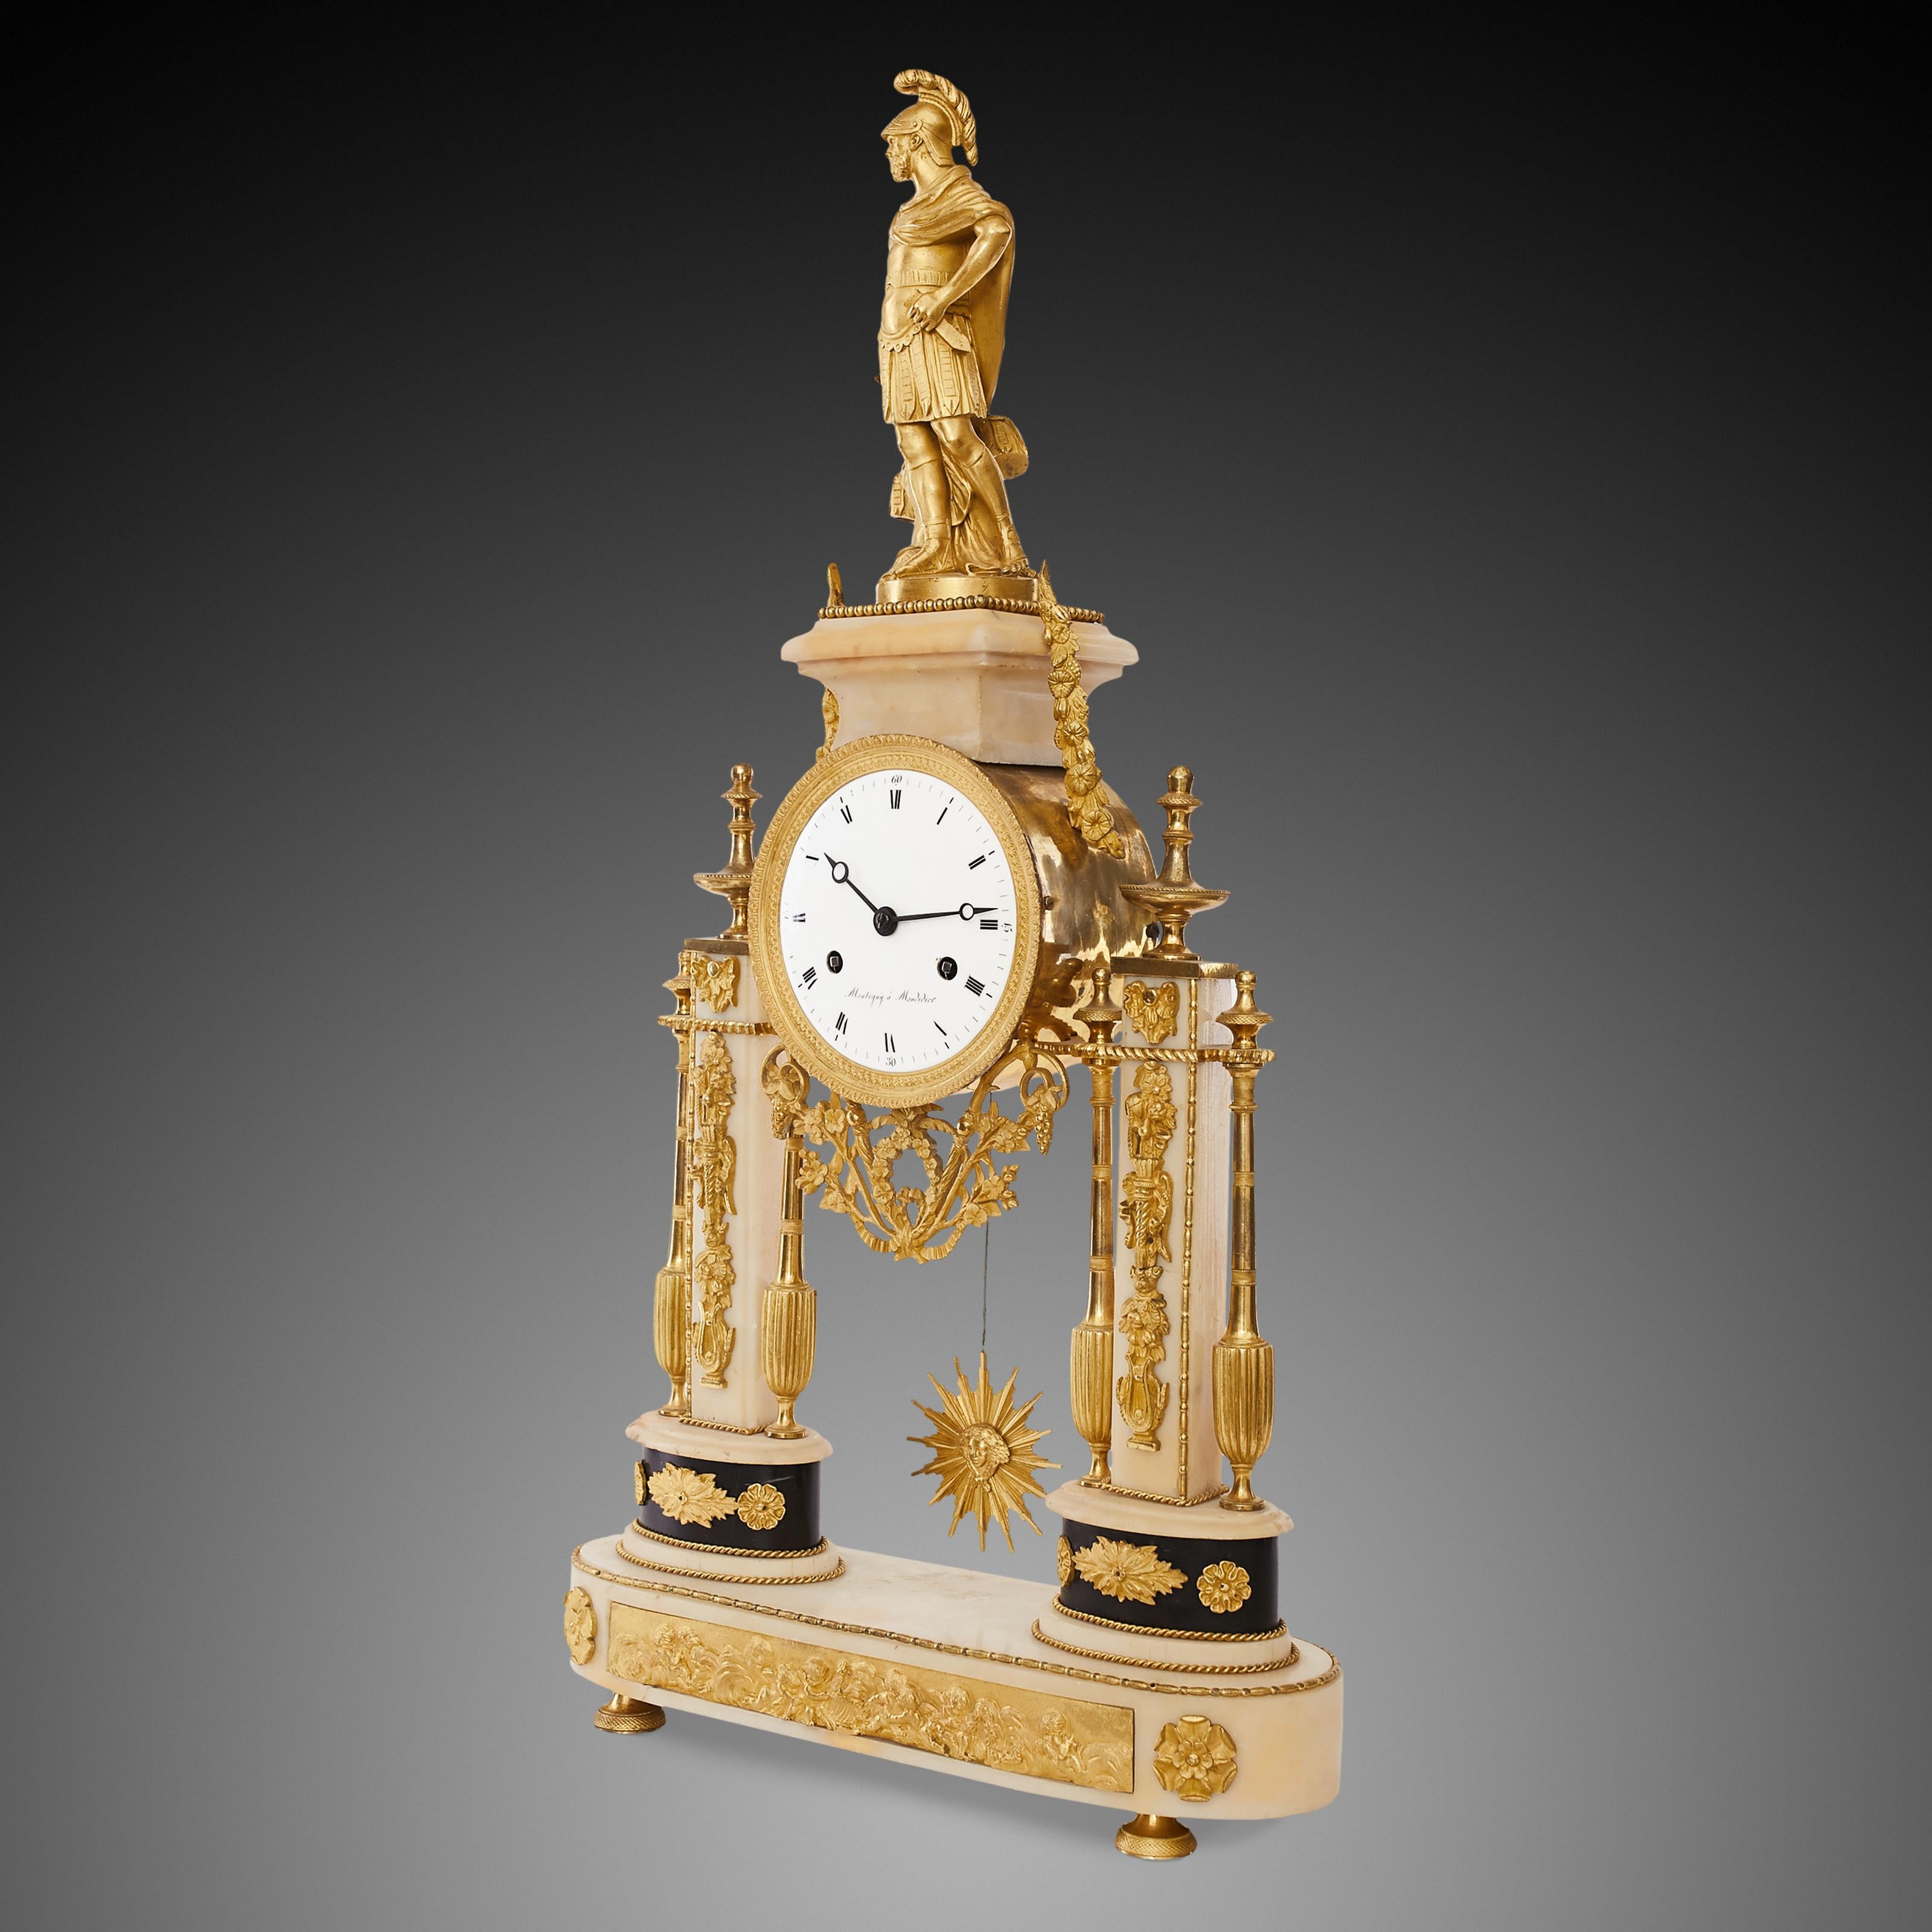 Louis XVI portico clock
Pendulum called 